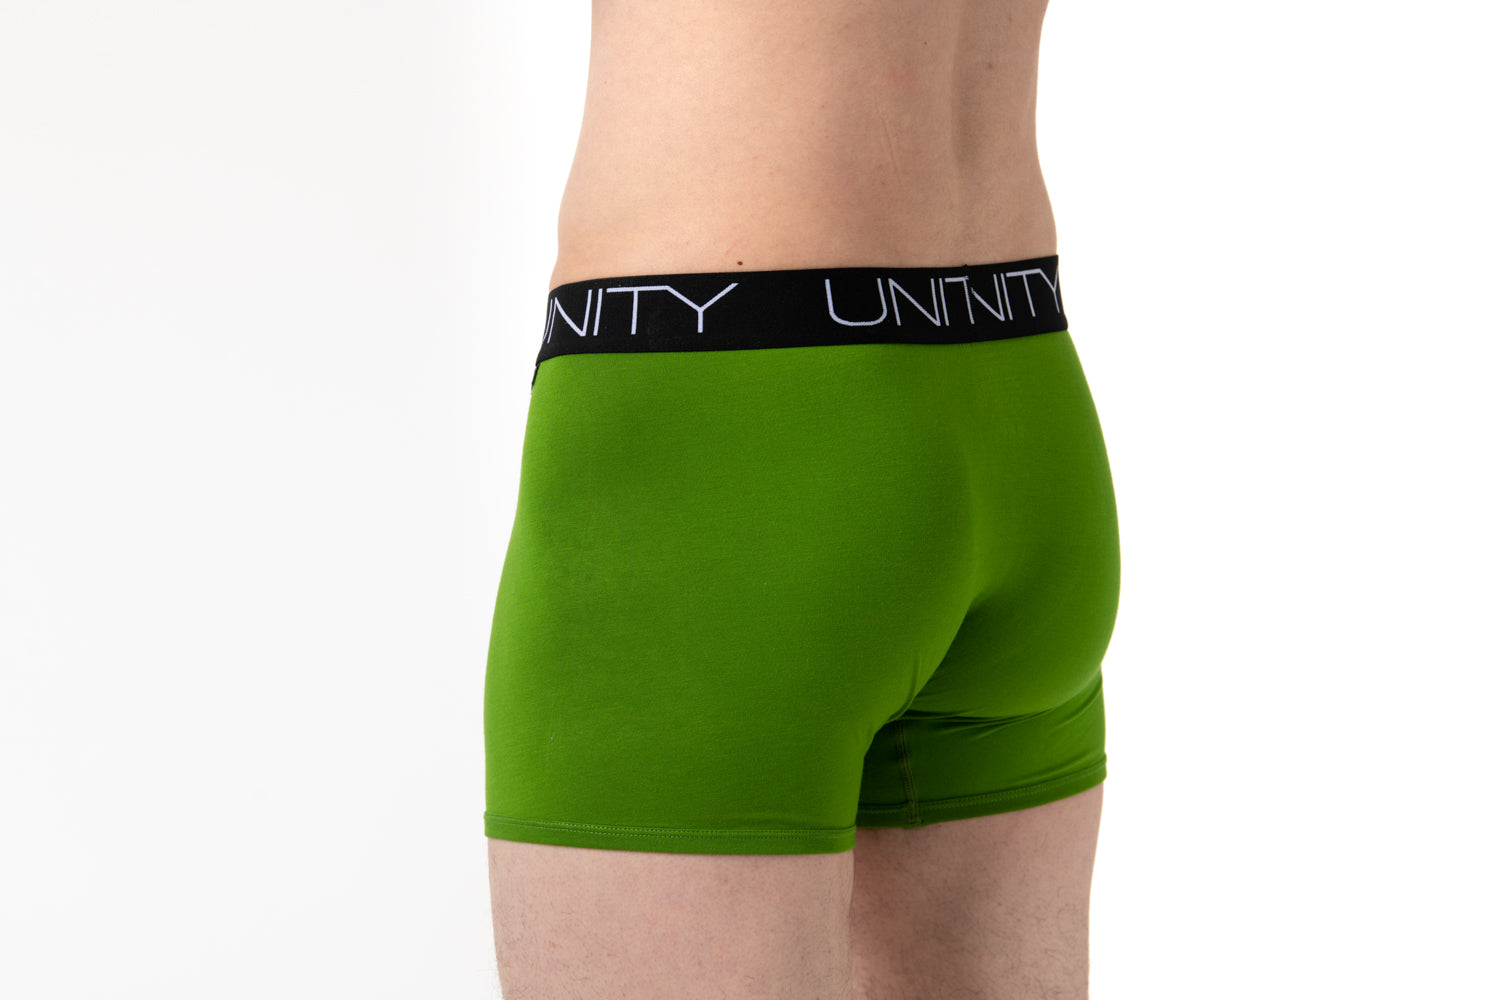 most comfortable underwear for men, men's bamboo underwear, eco-friendly underwear, men's underwear